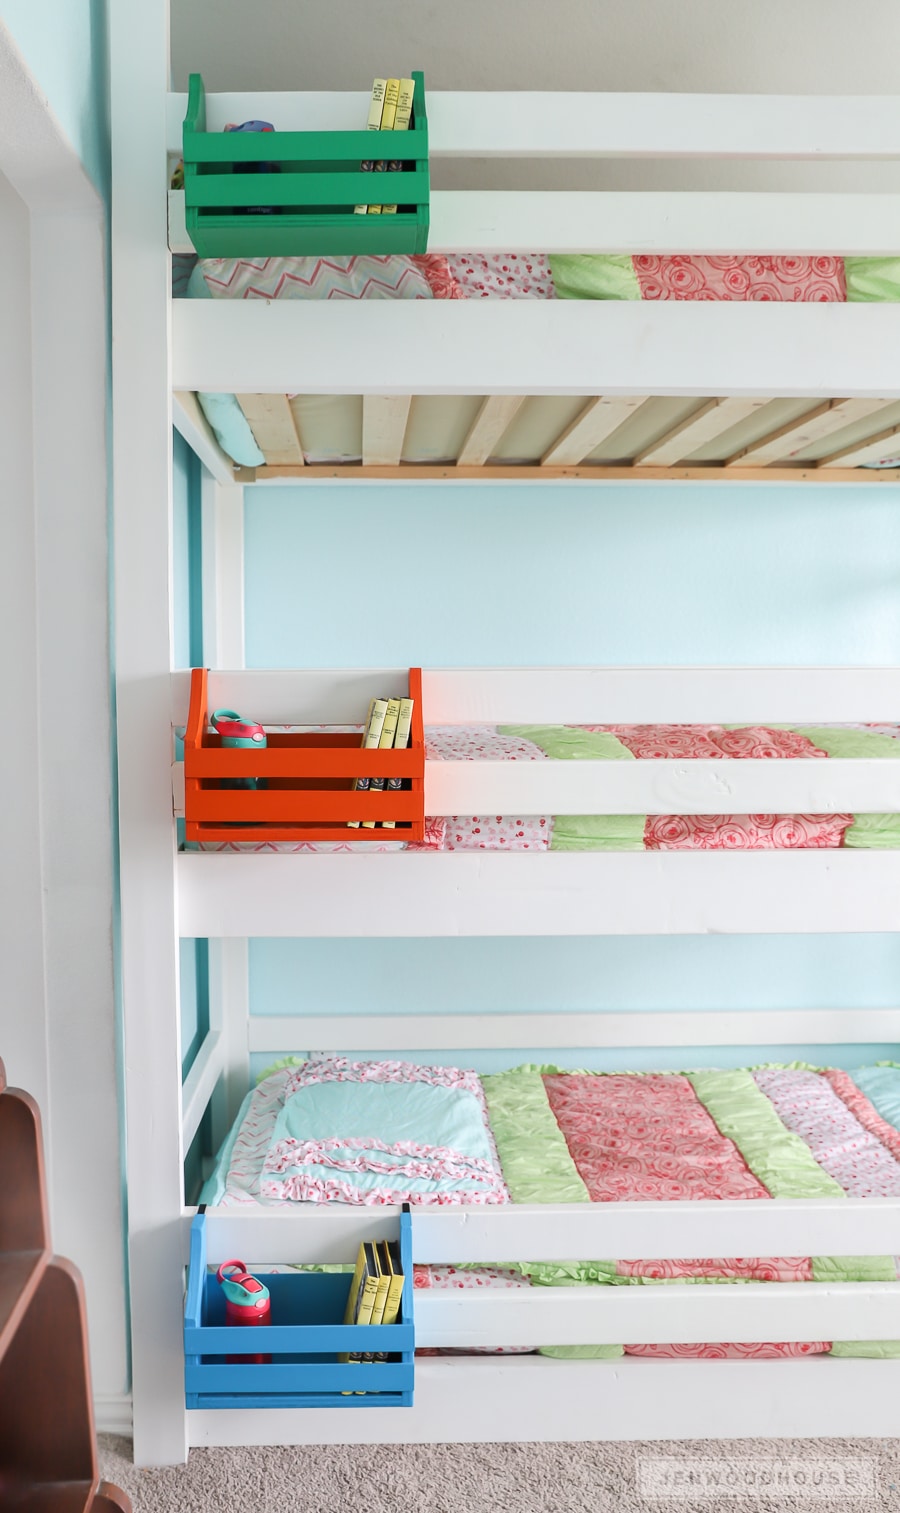 How to build DIY bunk bed nightstands